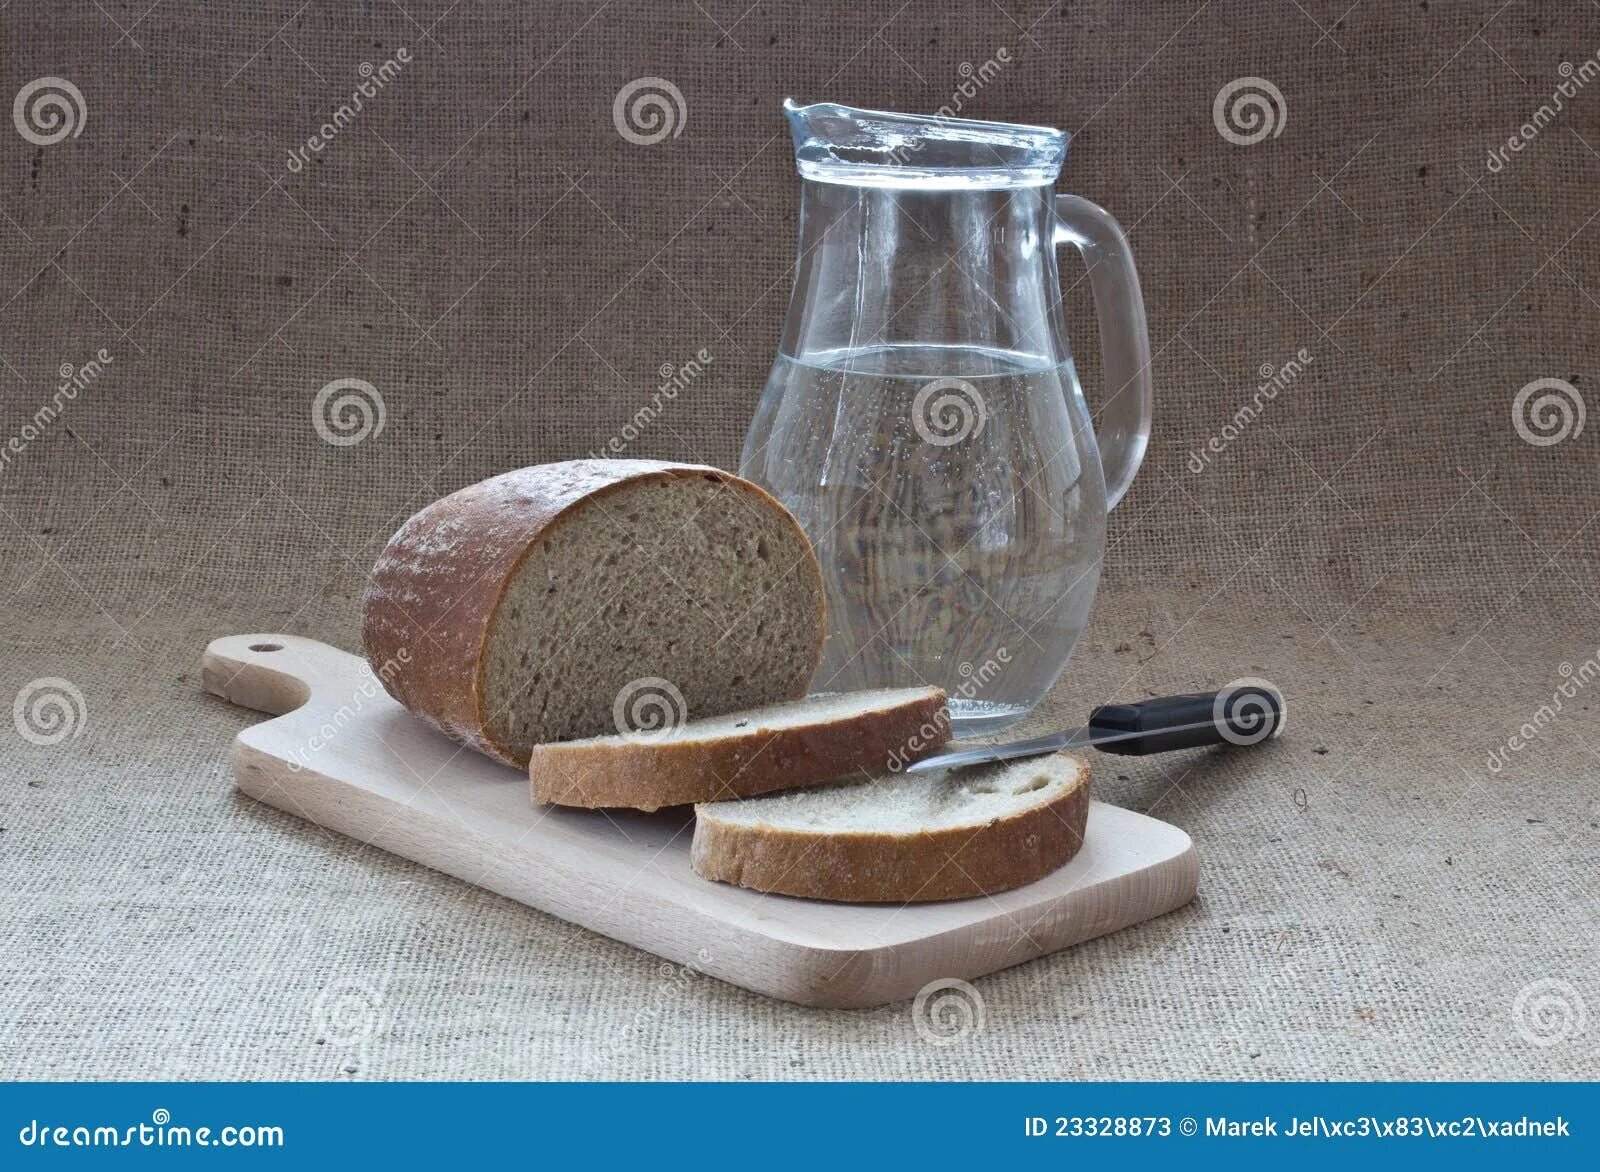 Воды и хлеба дай. Хлеб и вода. Еда с водой хлеб. Черный хлеб и вода. Стакан воды и хлеб.